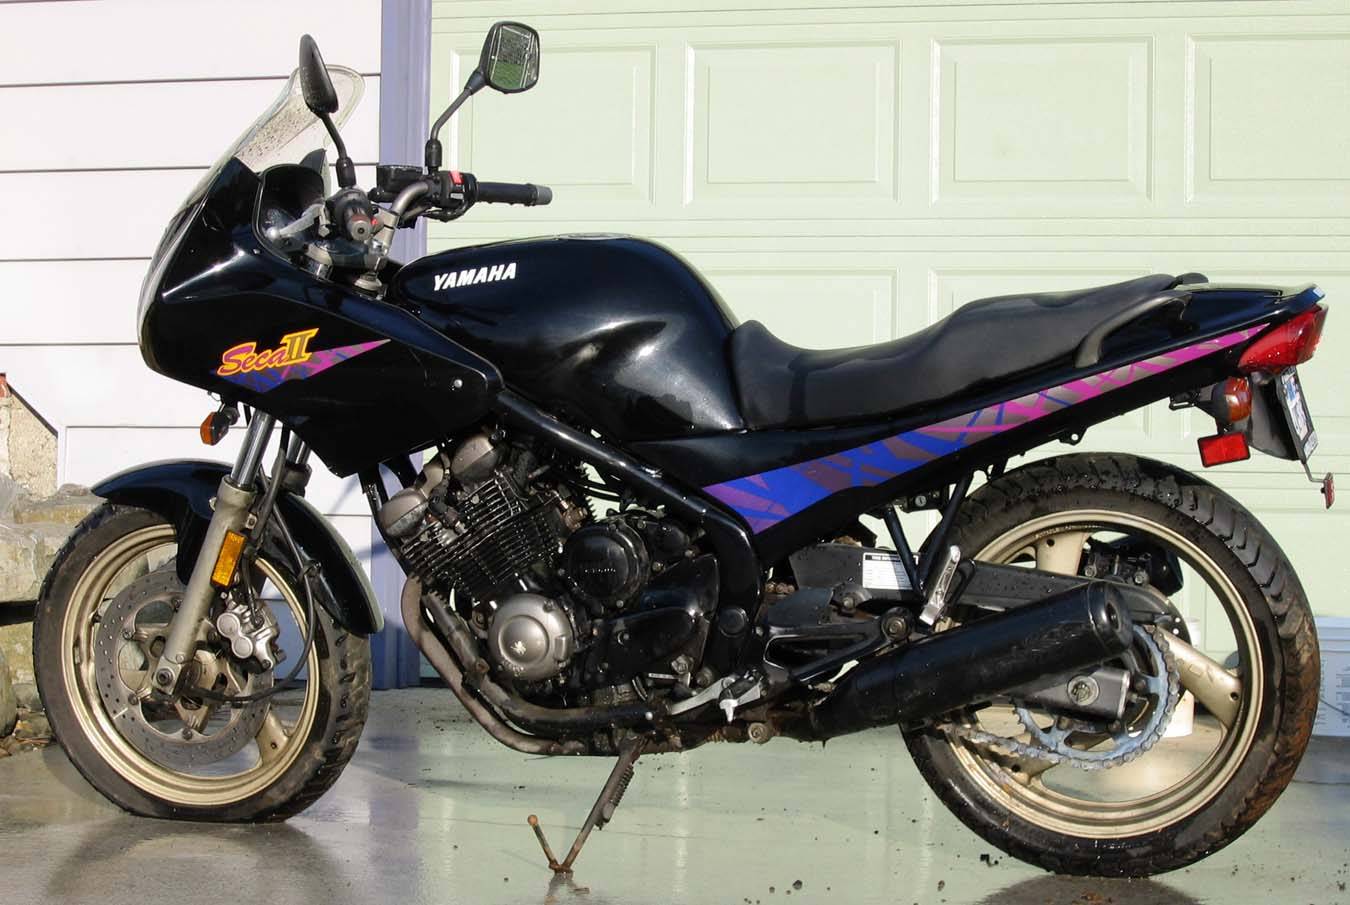 Yamaha xj 600 s diversion - обзор, технические характеристики | mymot - каталог мотоциклов и все объявления об их продаже в одном месте